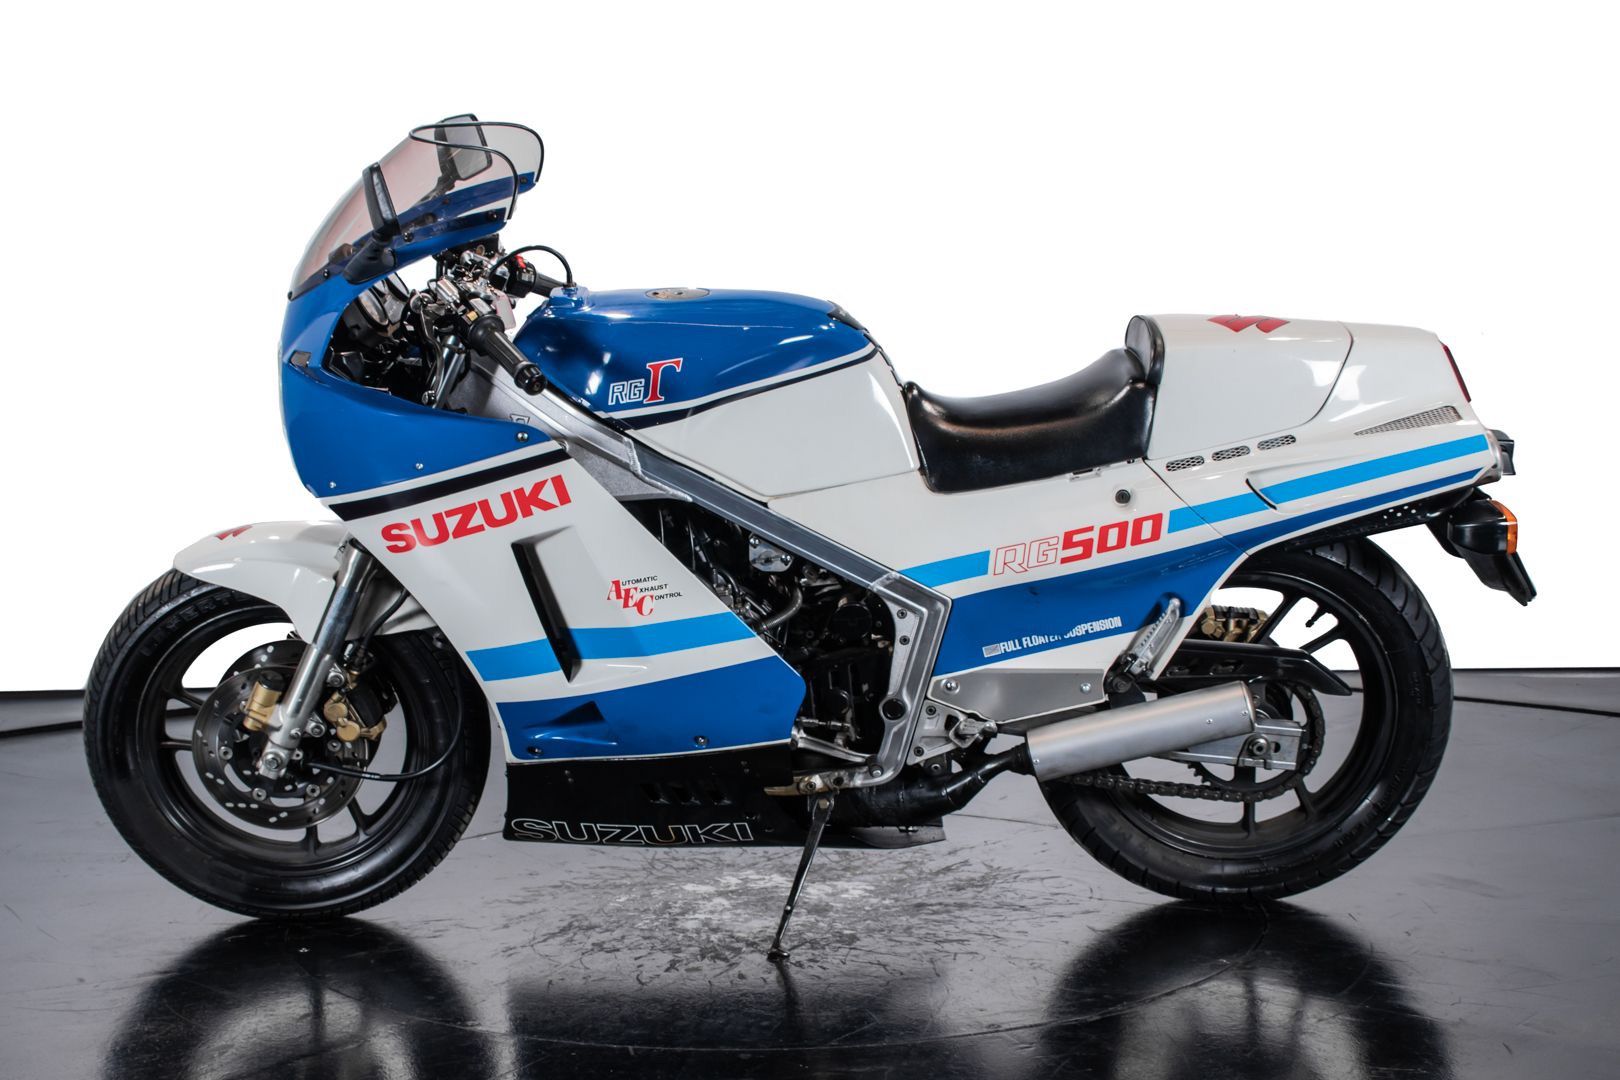 1985 Suzuki RG500 motorcycle